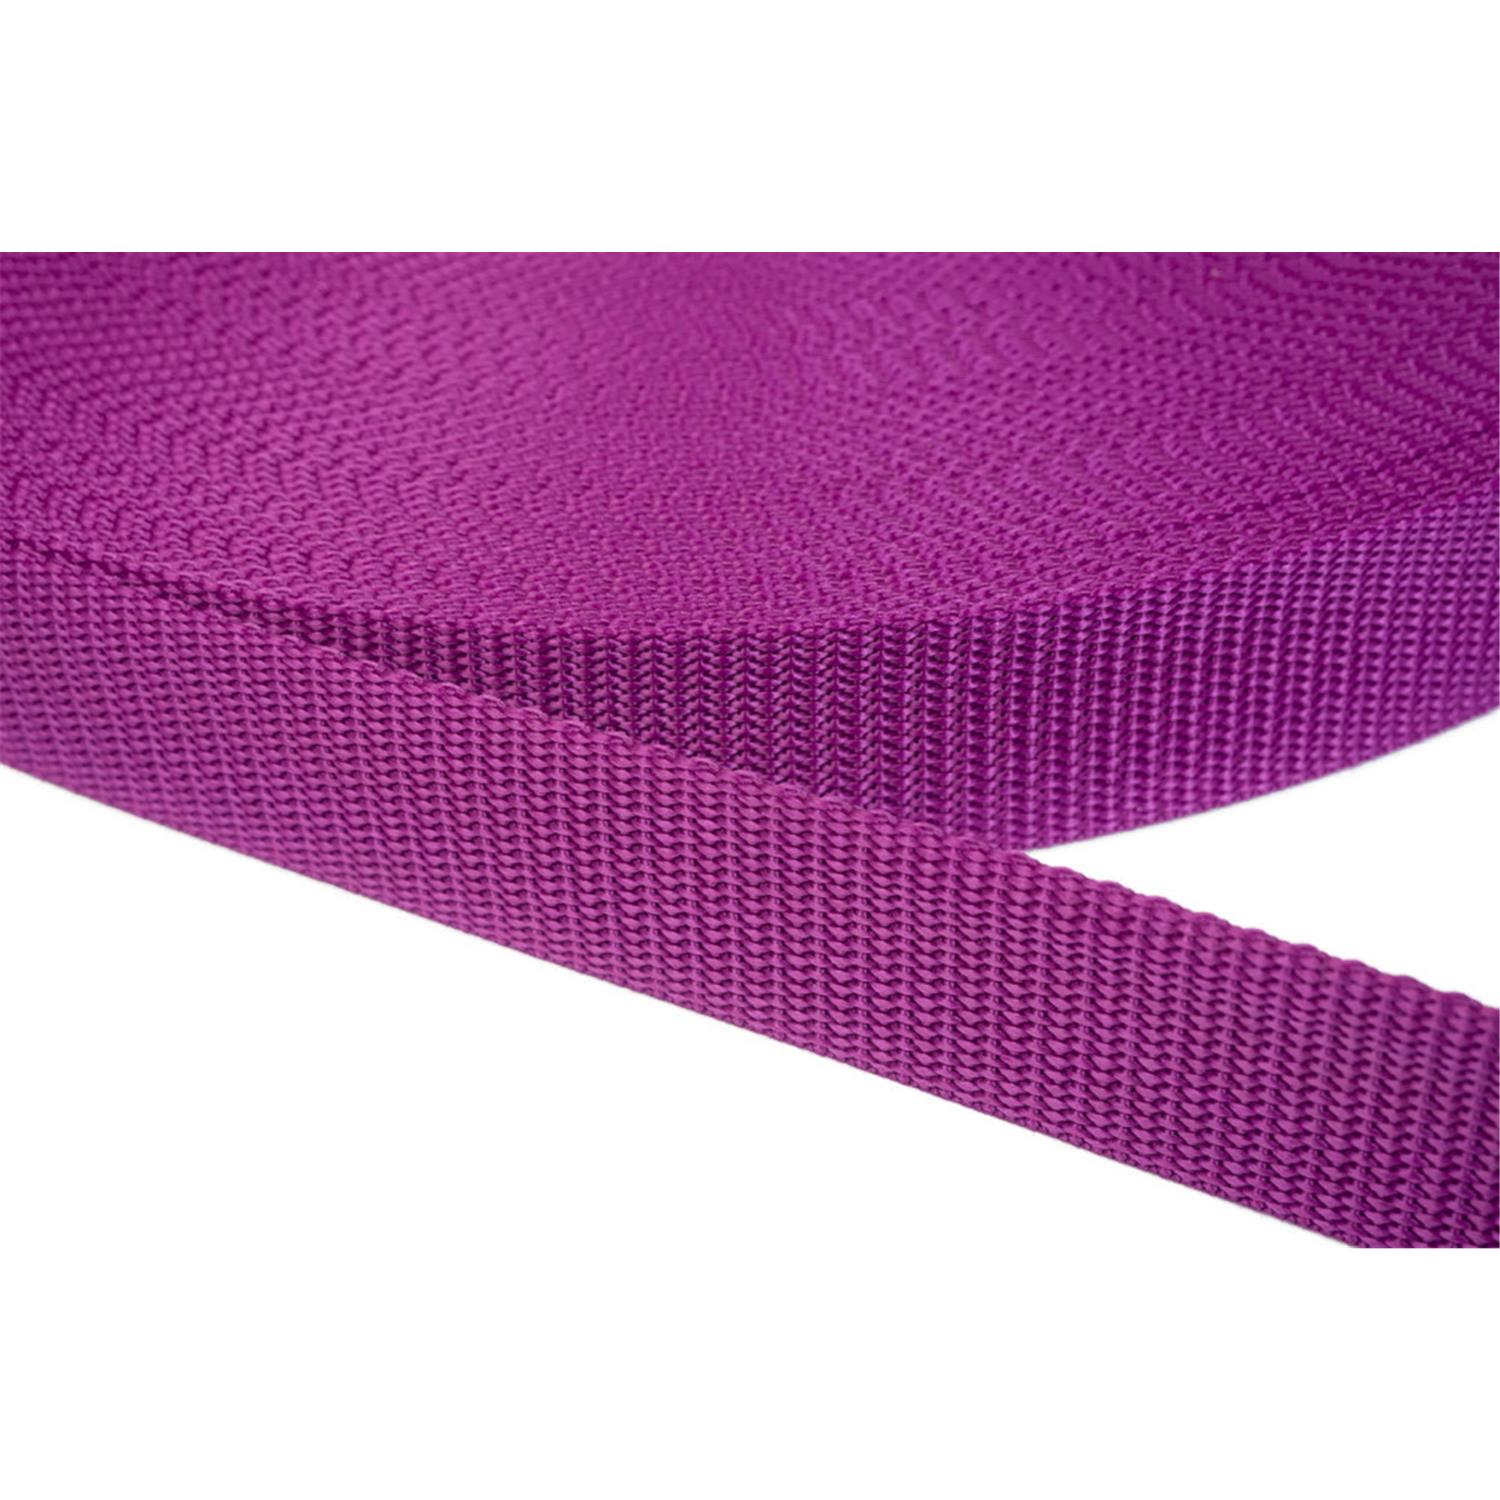 Gurtband 15mm breit aus Polypropylen in 41 Farben 22 - violettrot 50 Meter